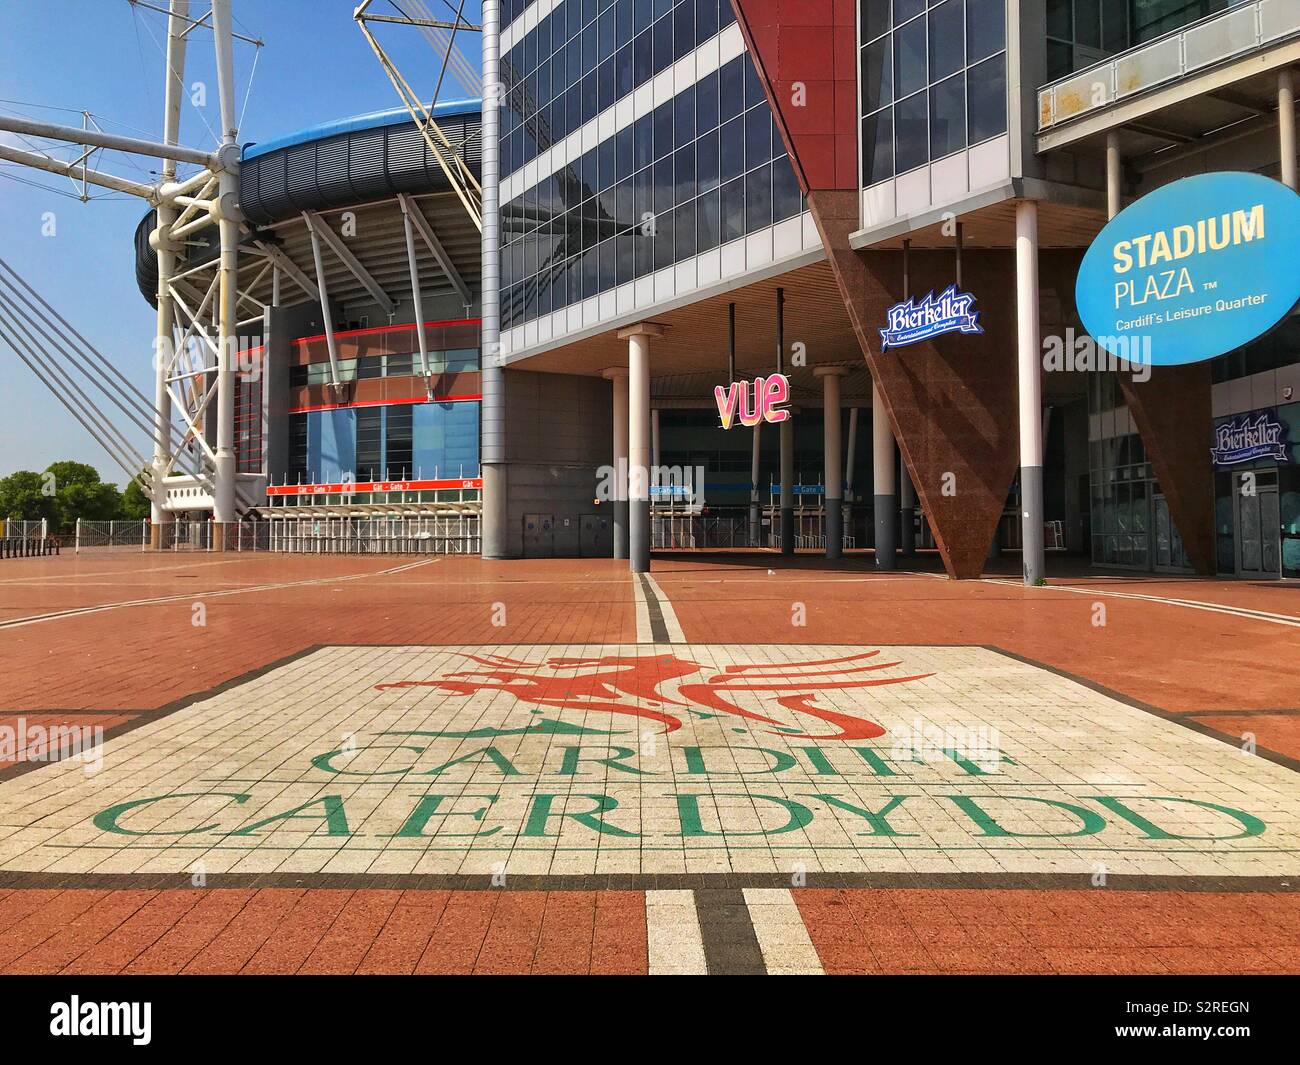 Mosaico sul lastricato plaza area esterna Cardiff's Principato Stadium Foto Stock